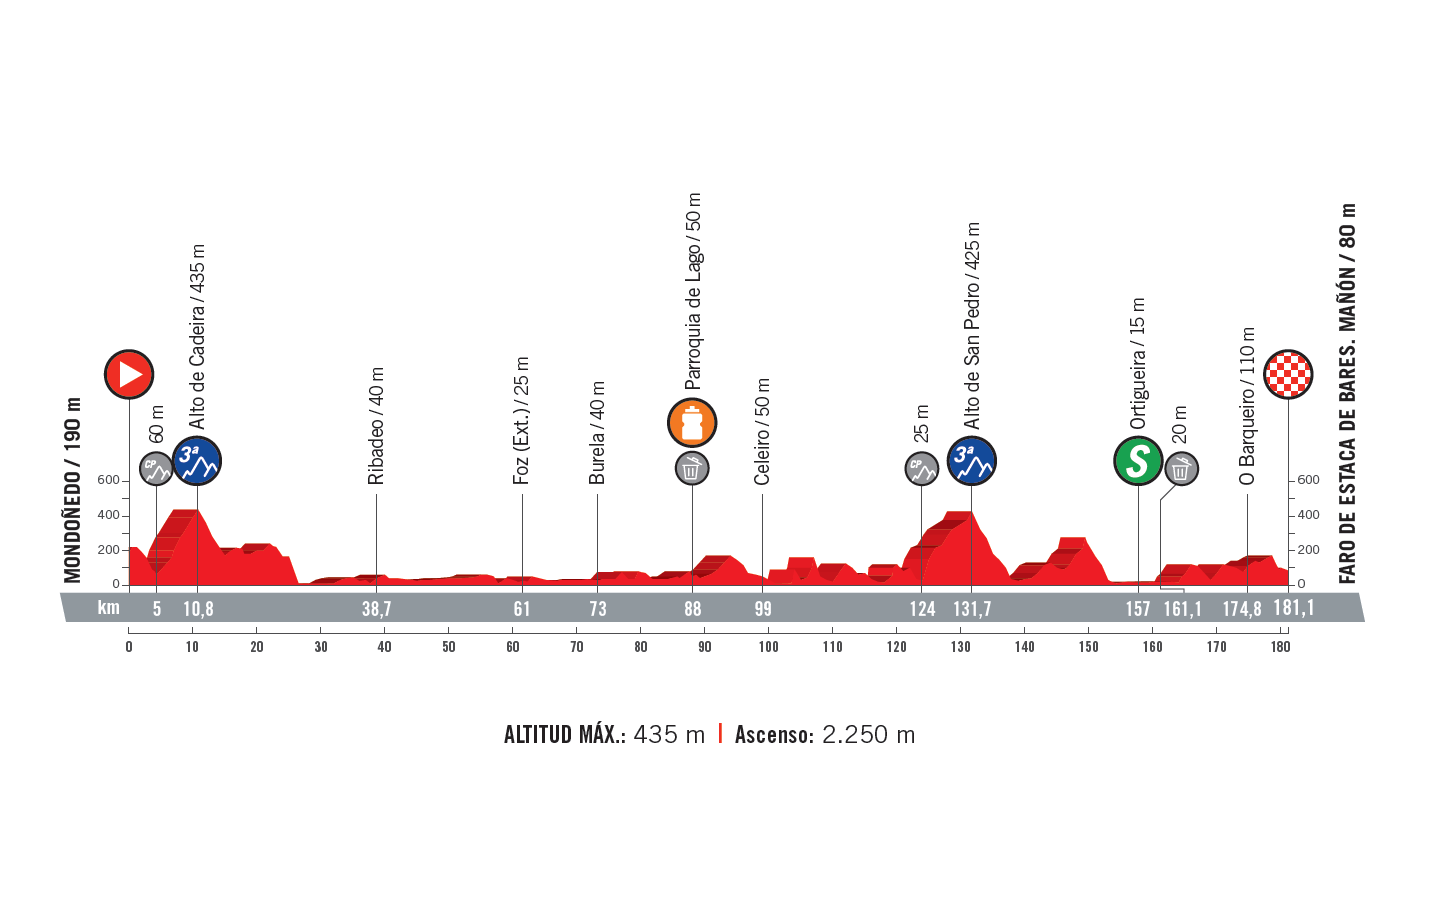 profil 12. etapu Vuelta a Espana 2018